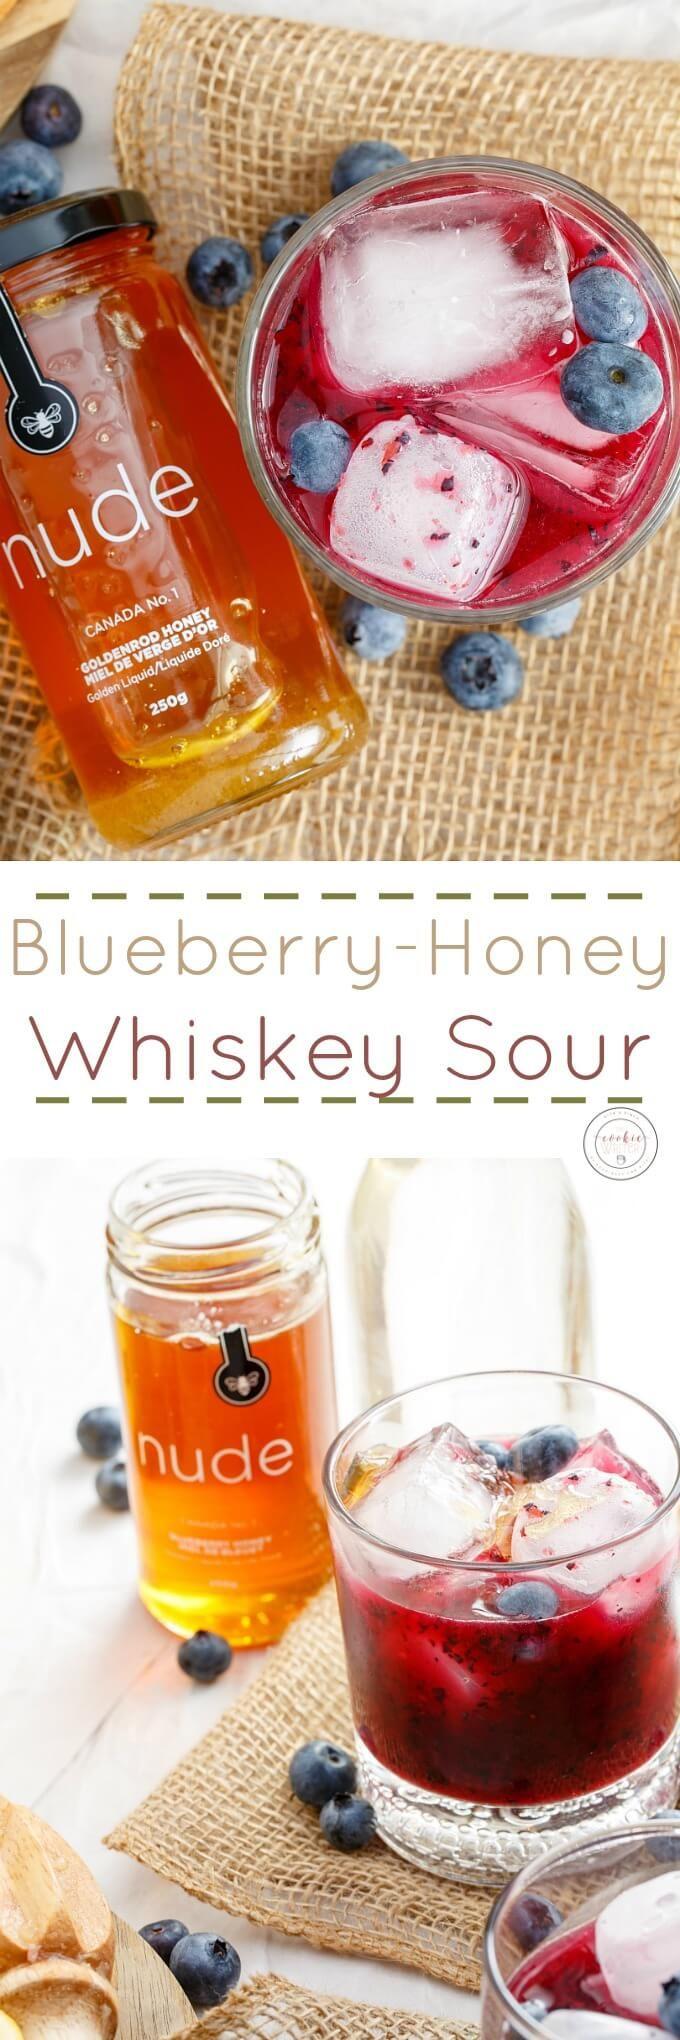 Свадьба - Blueberry-Honey Whiskey Sour